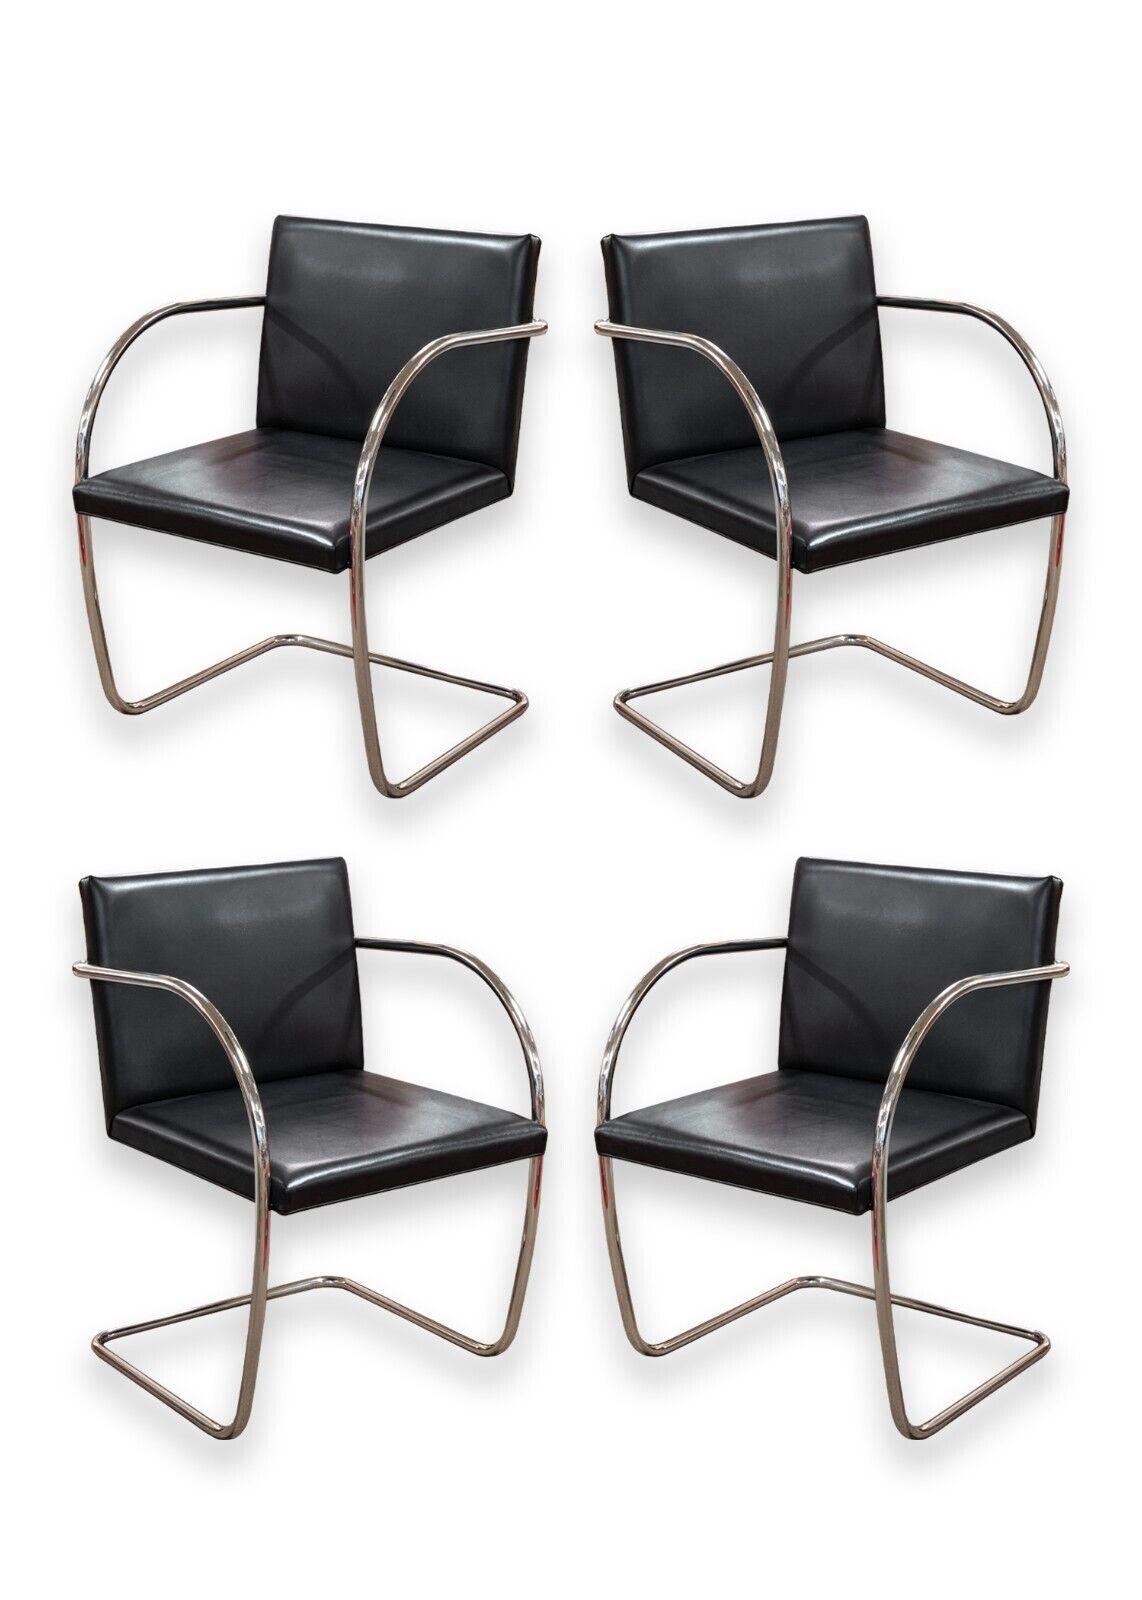 Ein Satz von 4 schwarzen Lederstühlen aus Brünnrohr. Ein schönes, klassisches Stuhlset des legendären Designers Mies van der Rohe für Knoll. Diese ikonischen Stühle zeichnen sich durch eine schlichte, rechteckige Sitzfläche und Rückenlehne aus